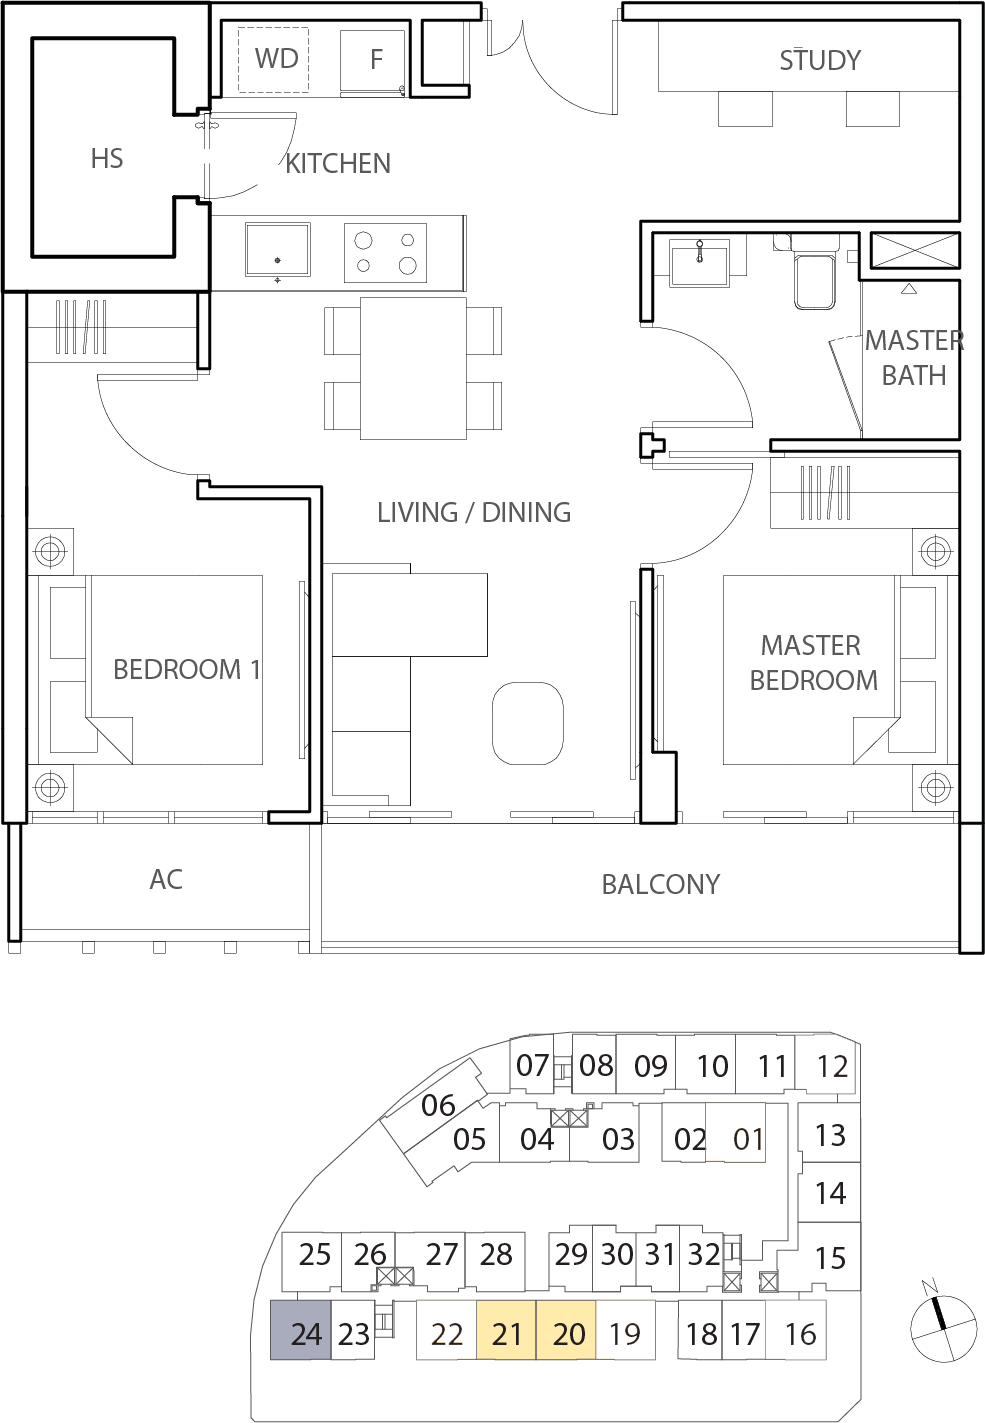 Floor Plan for Residential Type B5